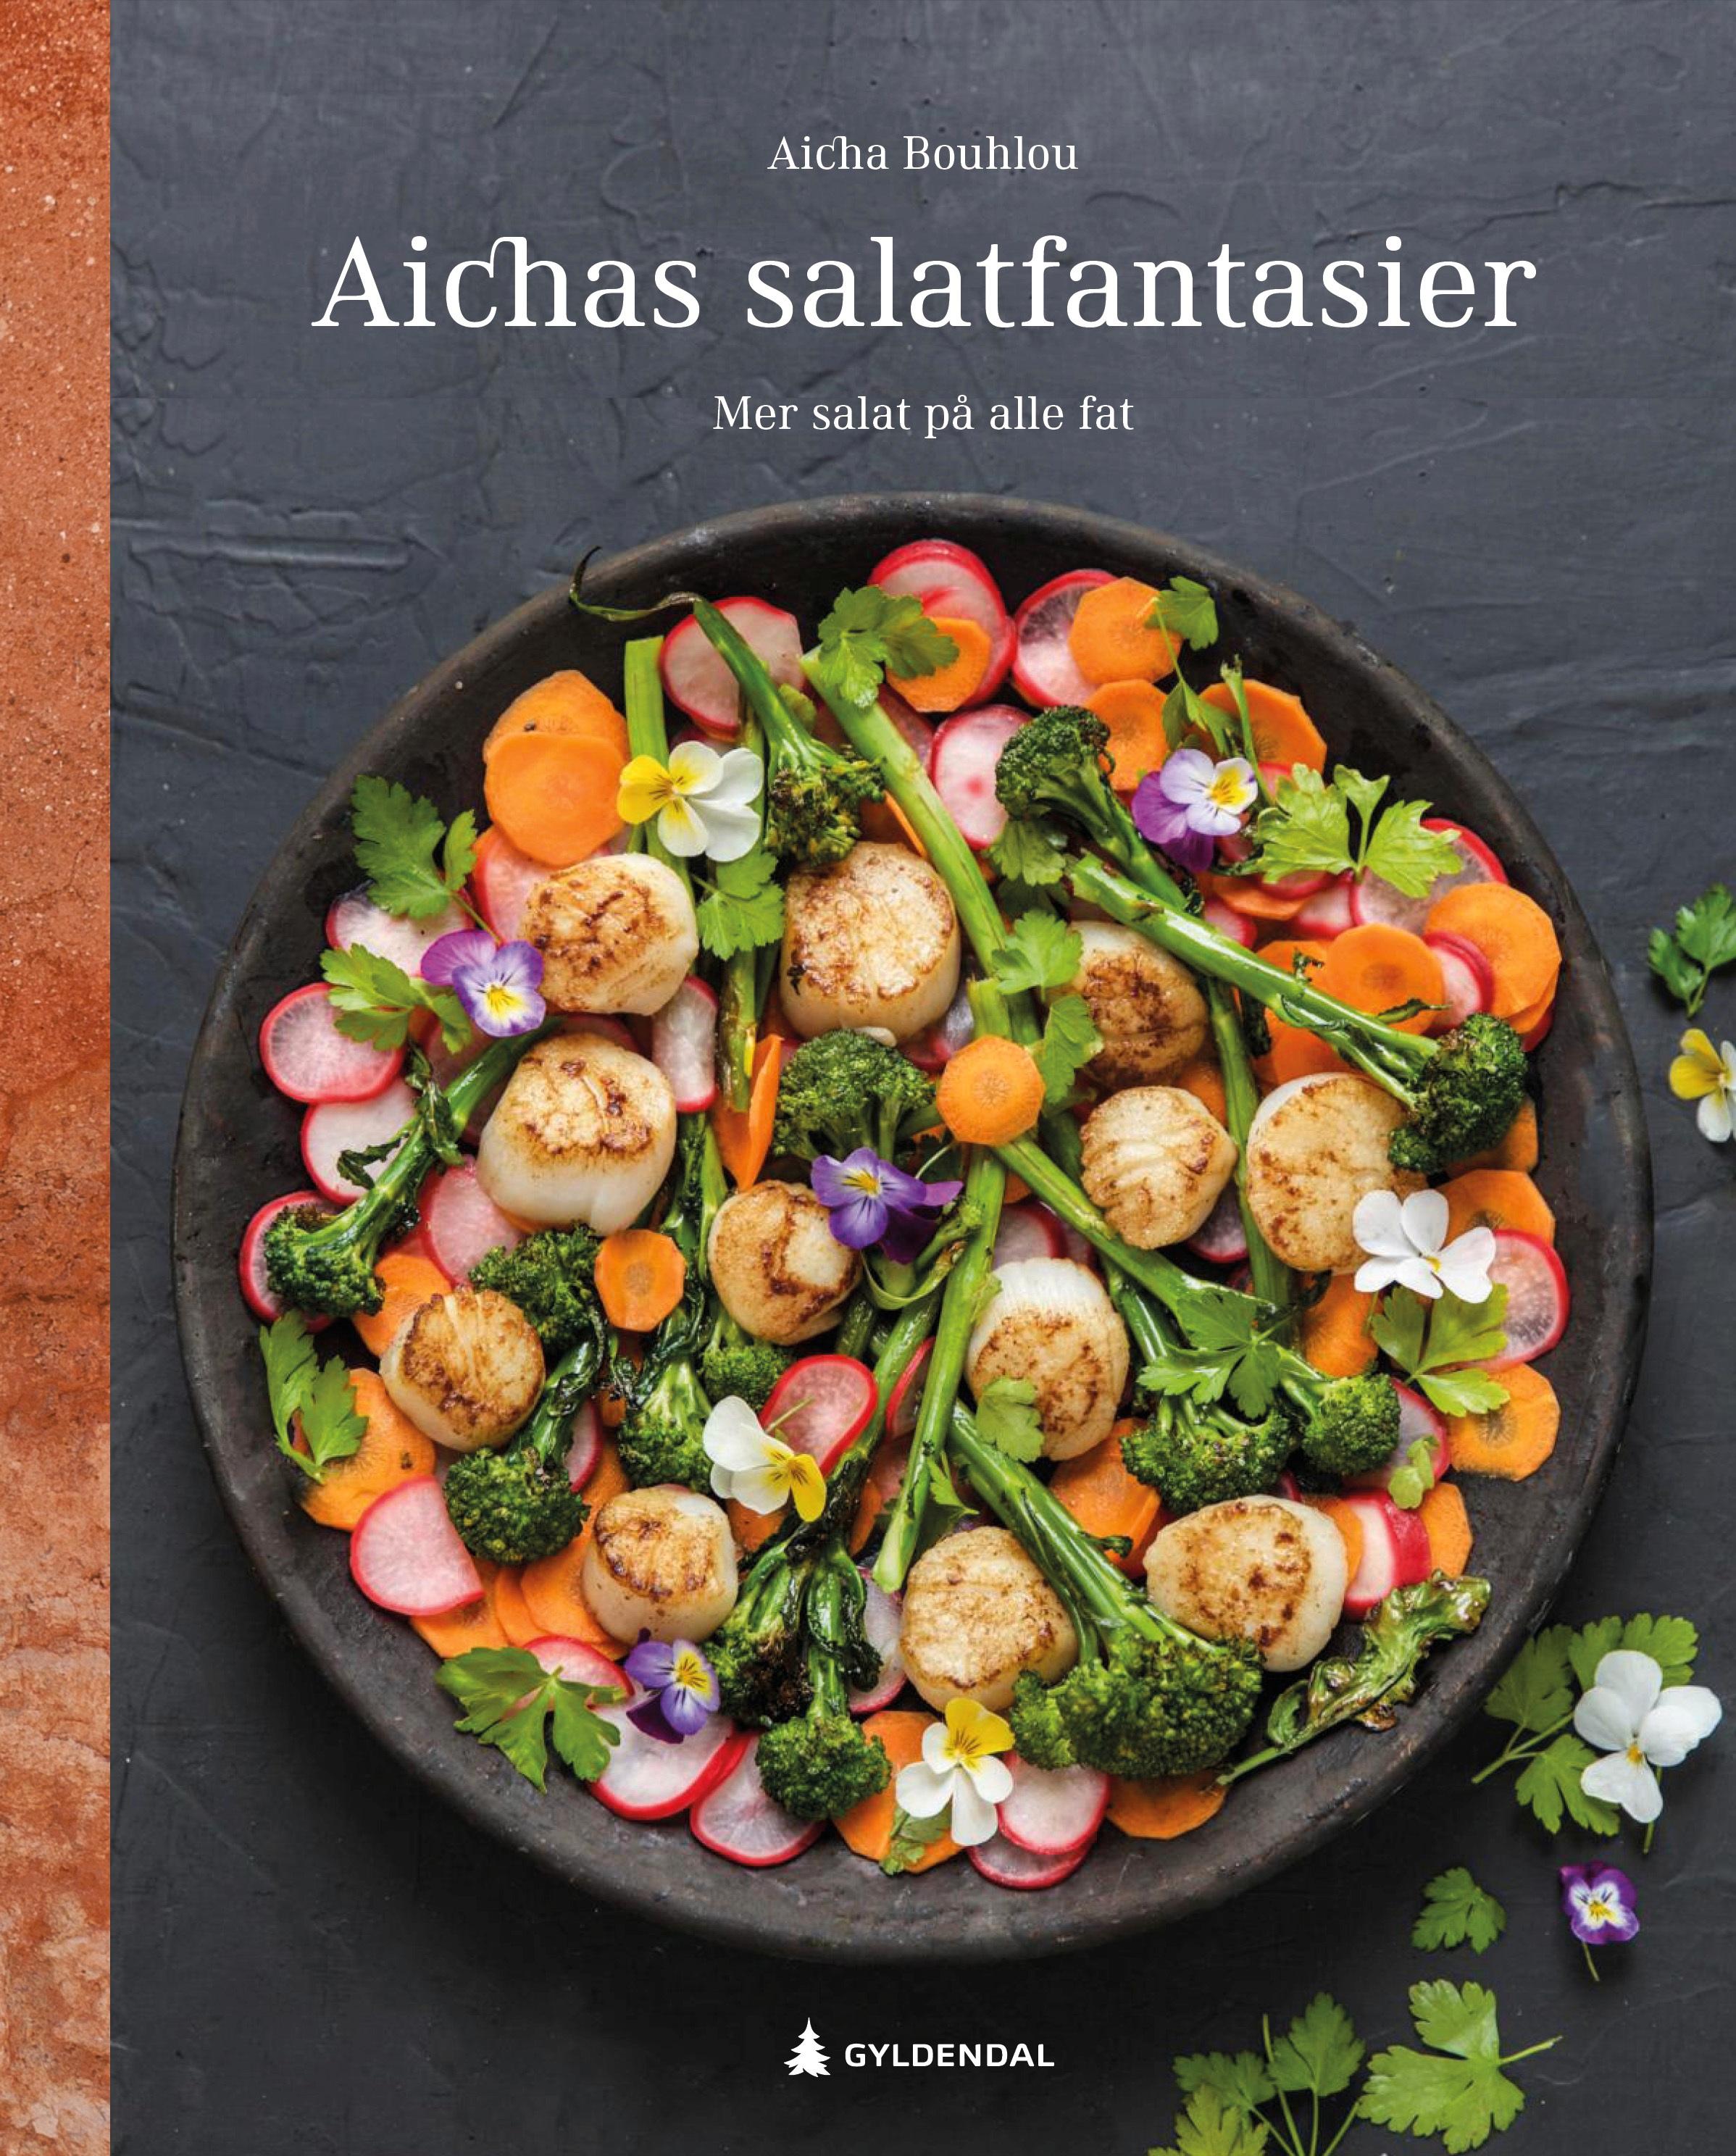 SALATFANTASI: Aicha Bouhlou står bak kokeboken på andreplass, nemlig «Aichas salatfantasier».